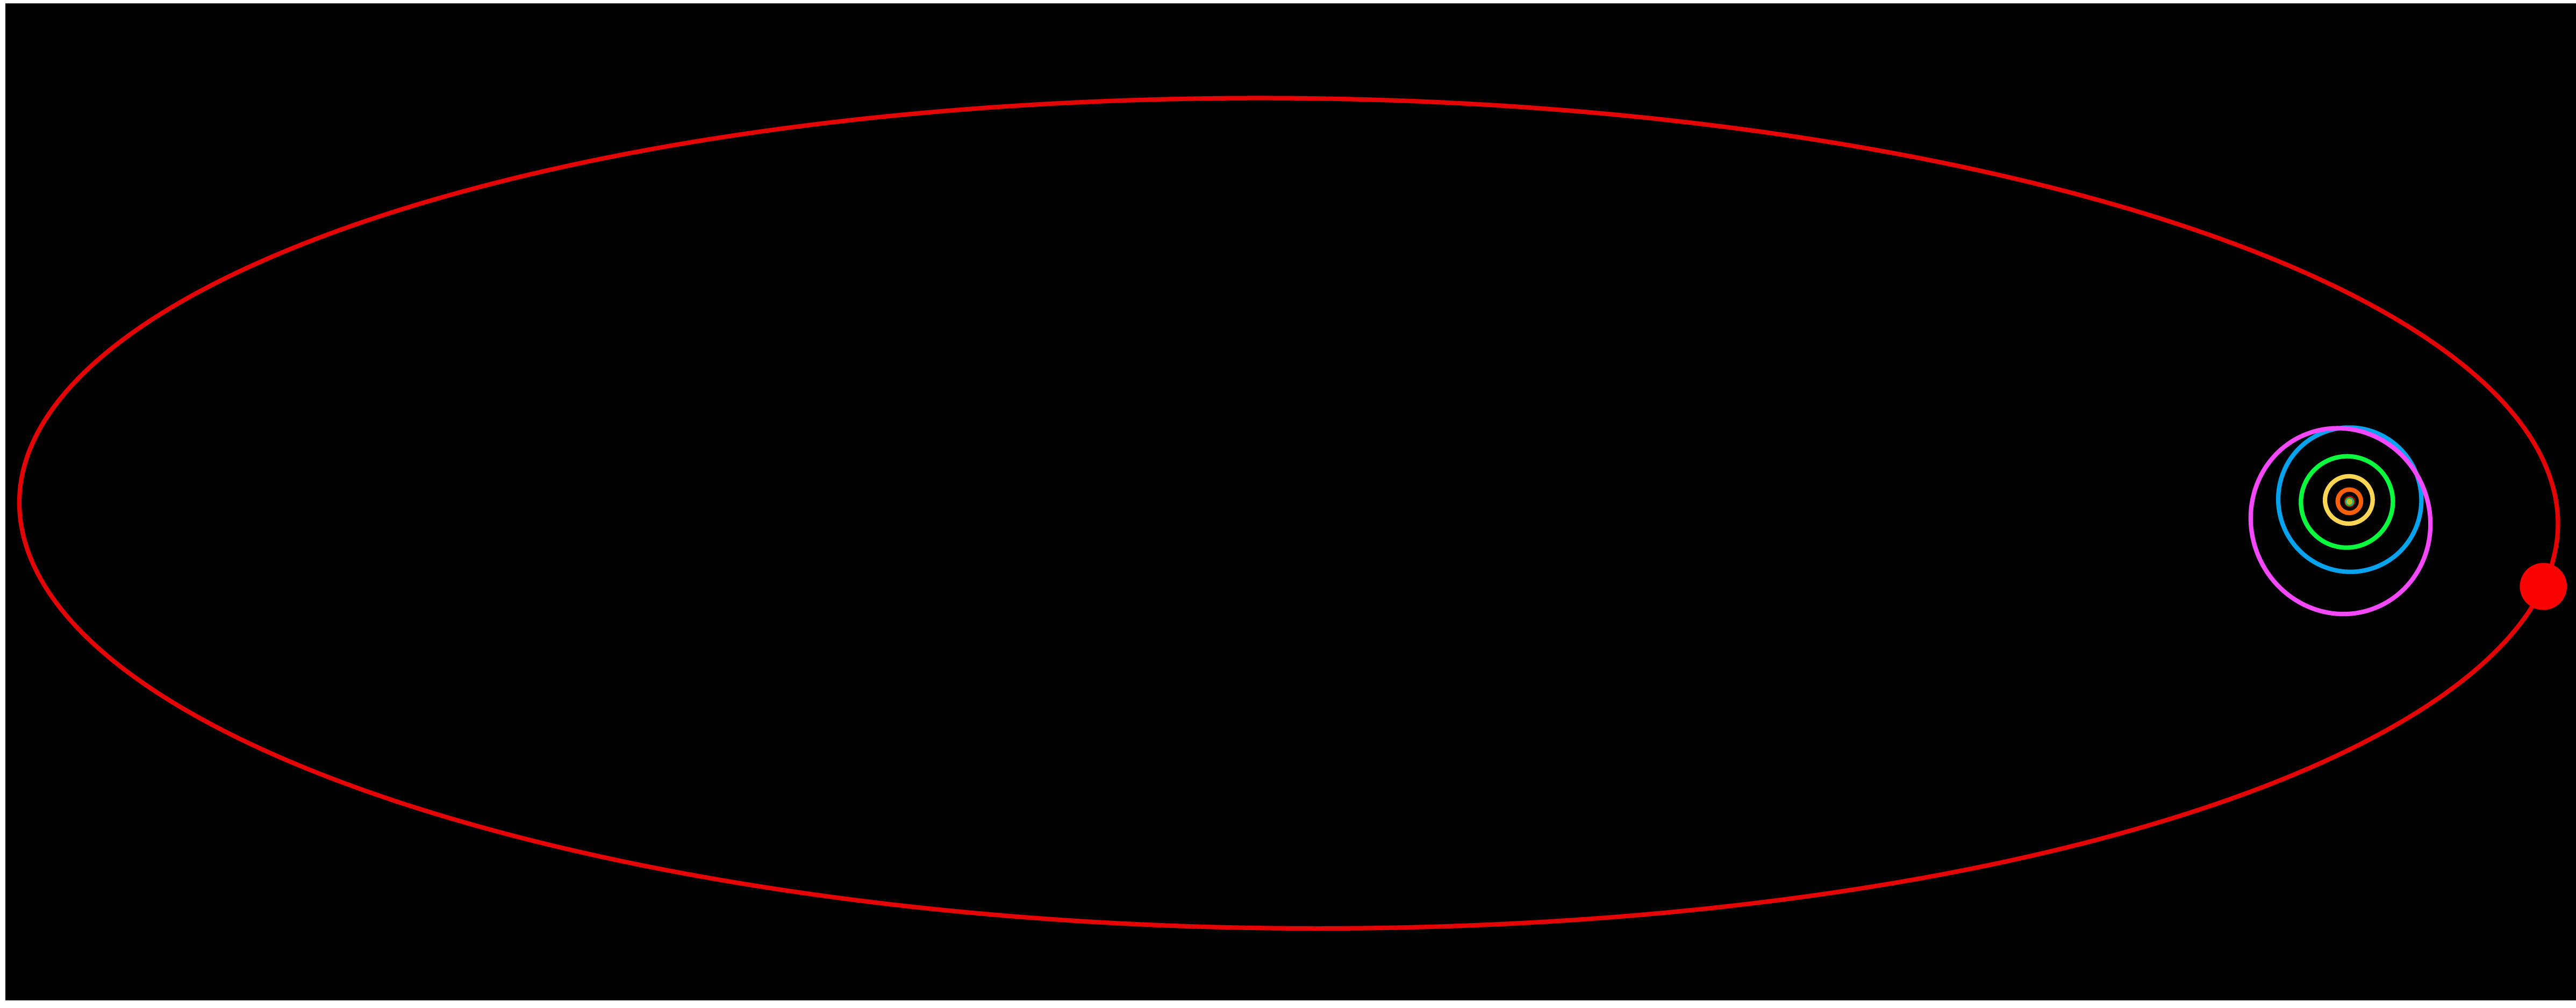 Sedna orbit.  https://commons.wikimedia.org/wiki/File:Sedna_orbit.svg